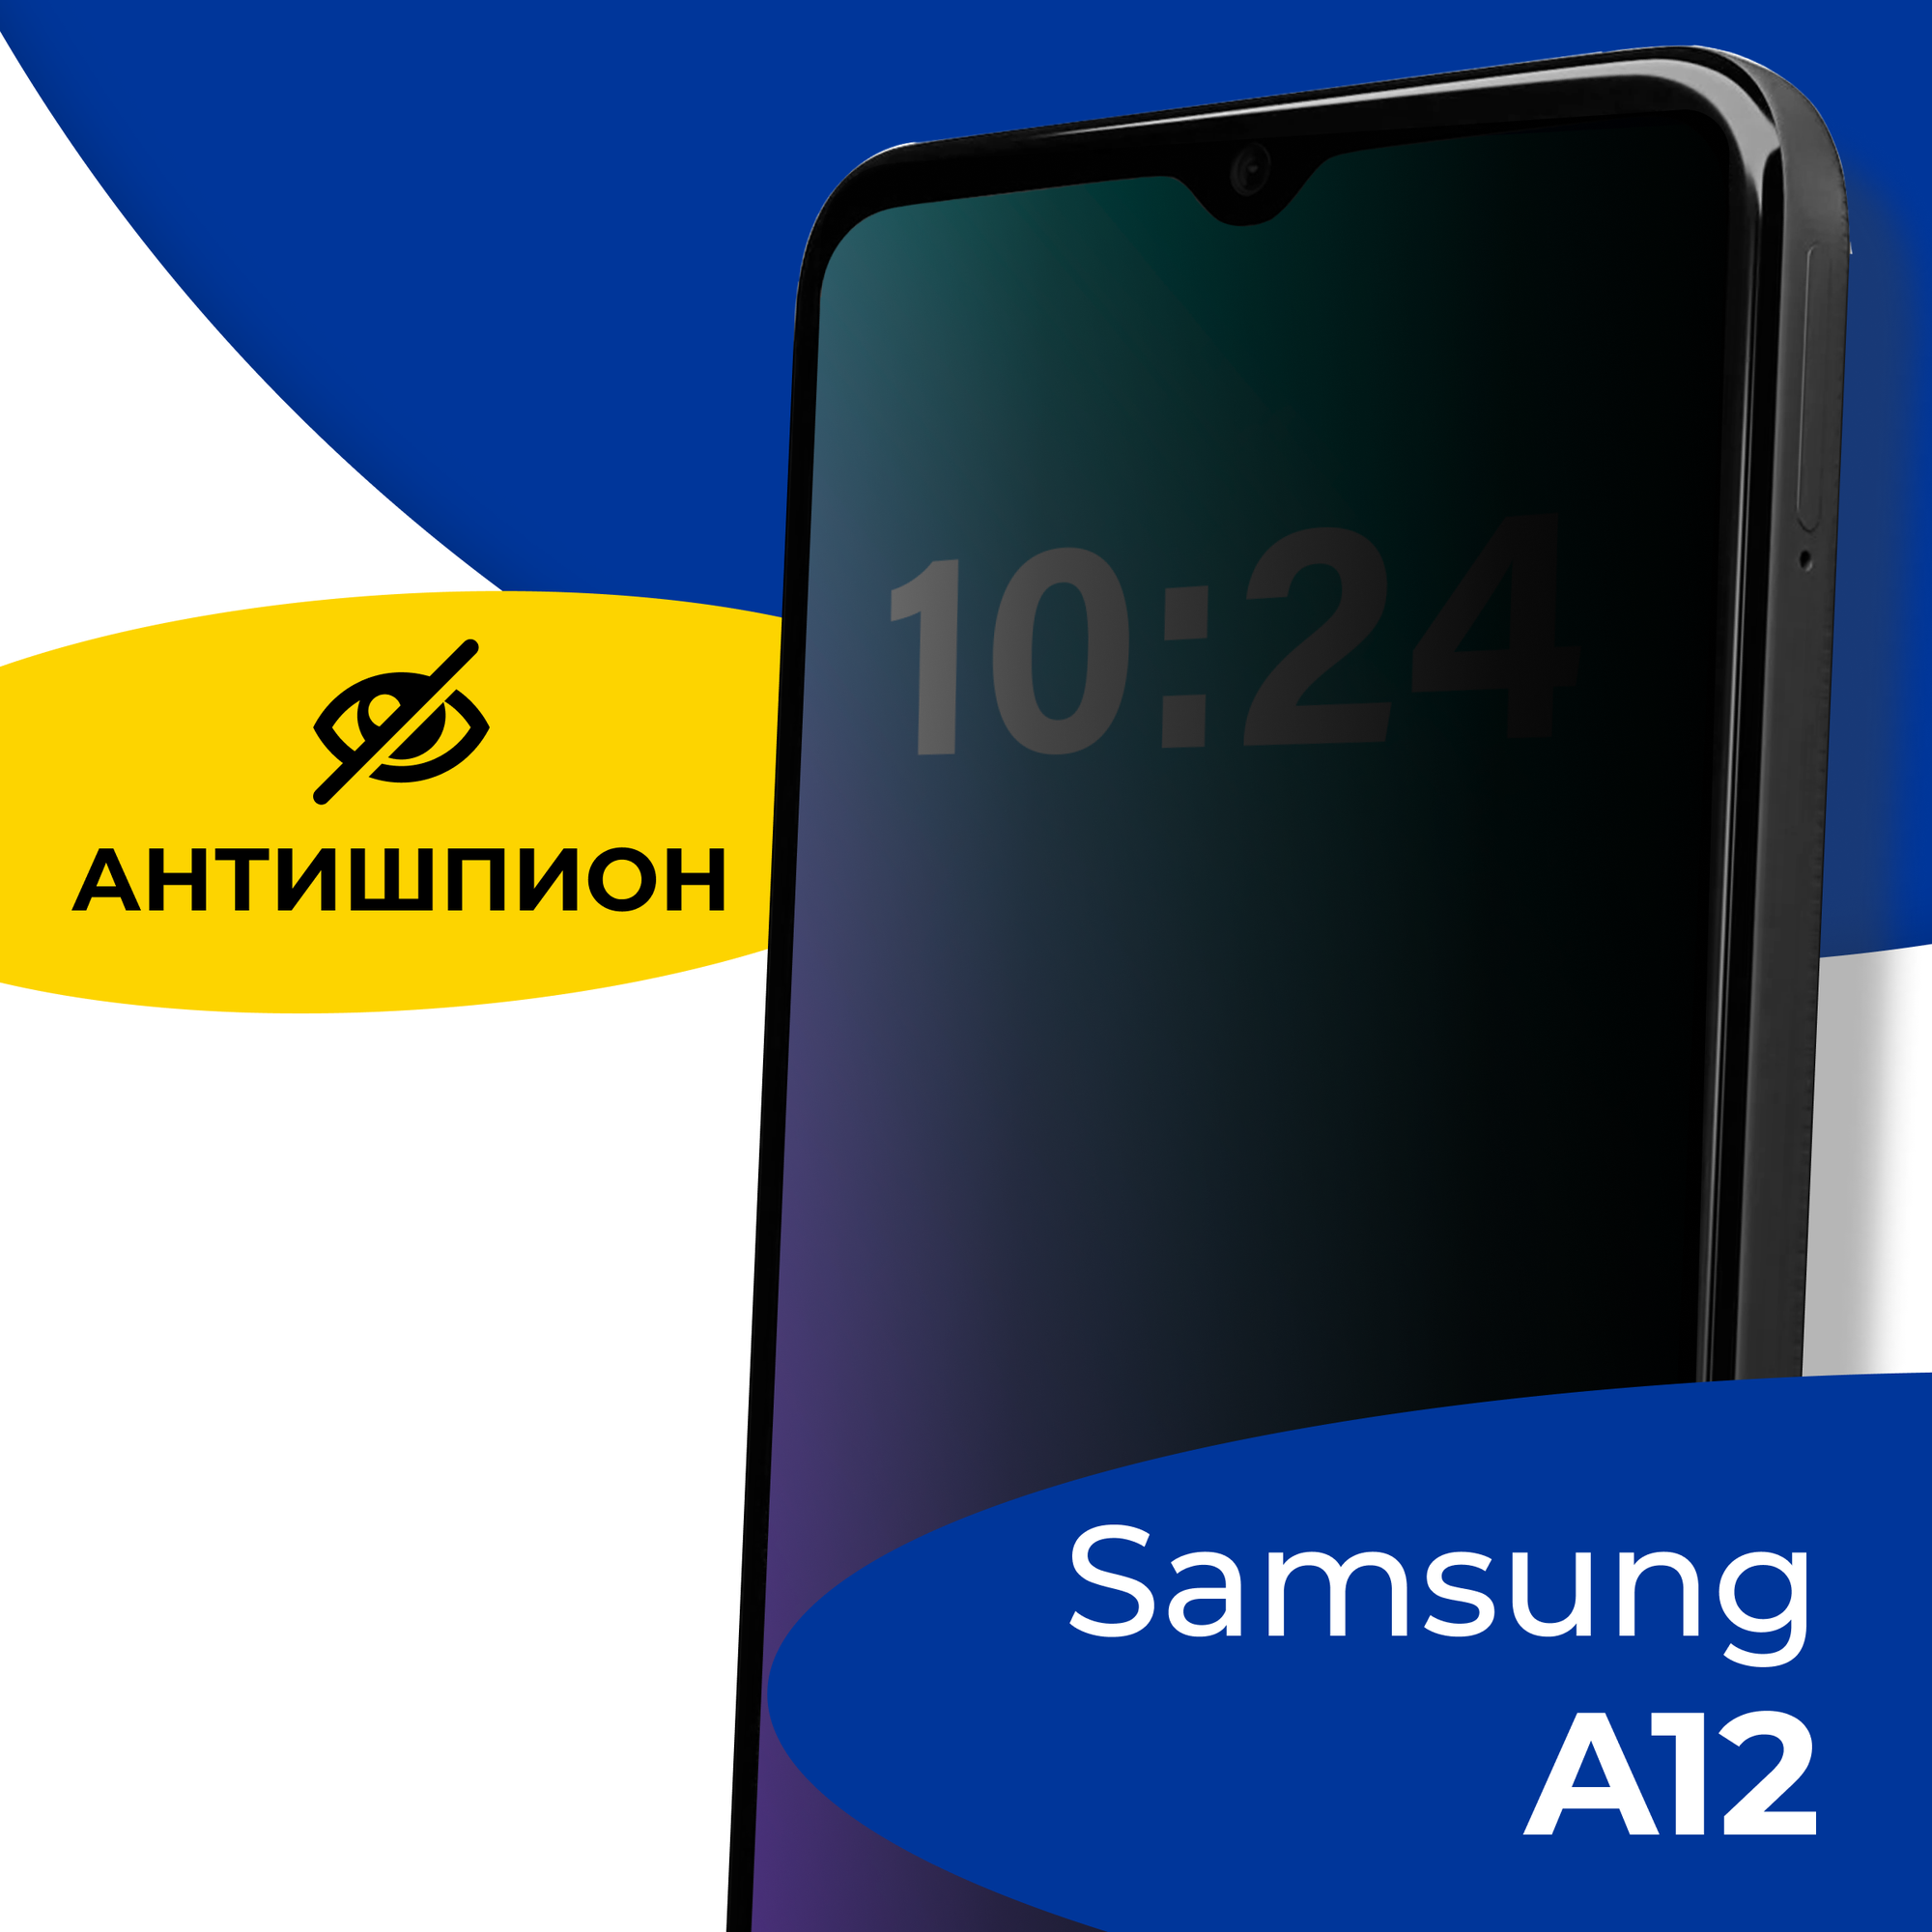 Защитное стекло Антишпион для телефона Samsung Galaxy A30 и A50 / Противоударное полноэкранное стекло 5D на смартфон Самсунг Галакси А30 А50 / Черное